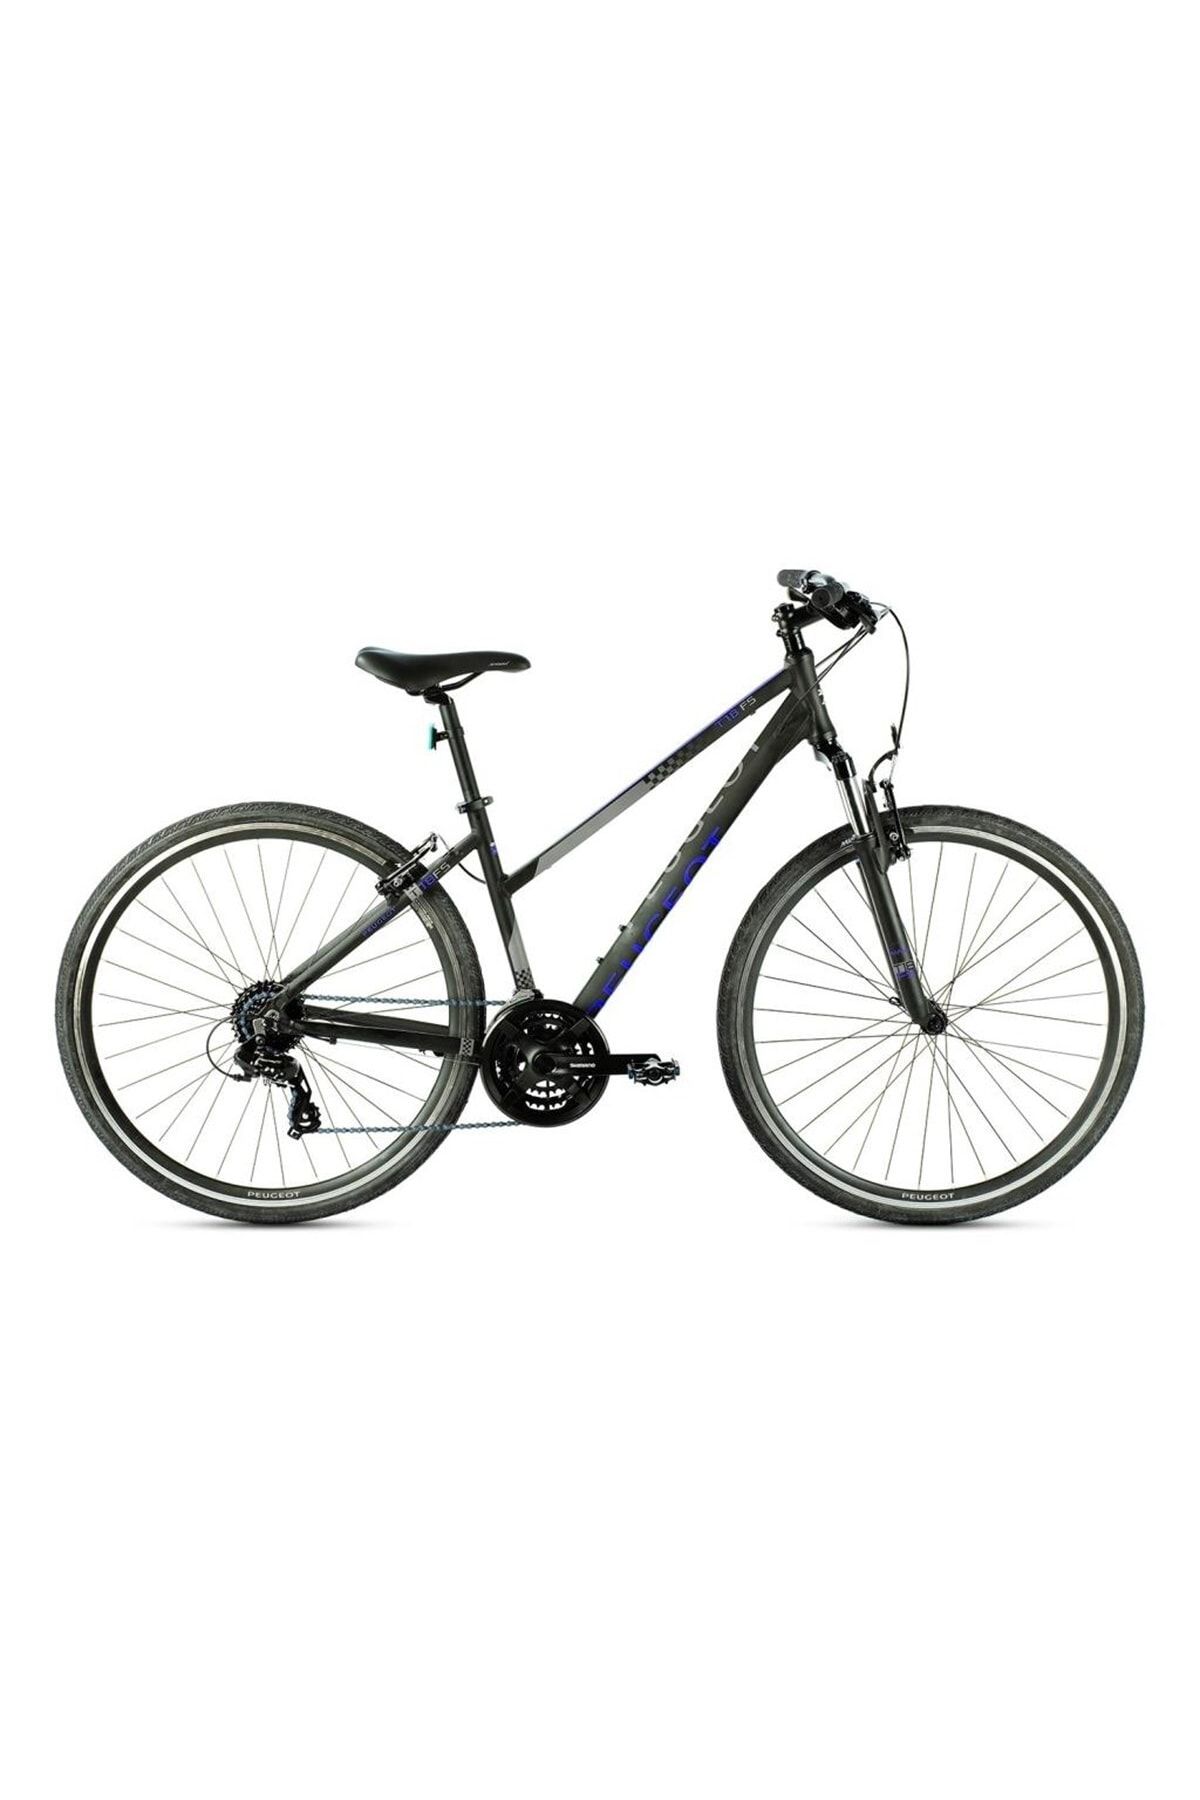 Peugeot Bisiklet T17-fsl 380h 28" 24-v Vb Siyah-menekşe Trekking Bisikleti